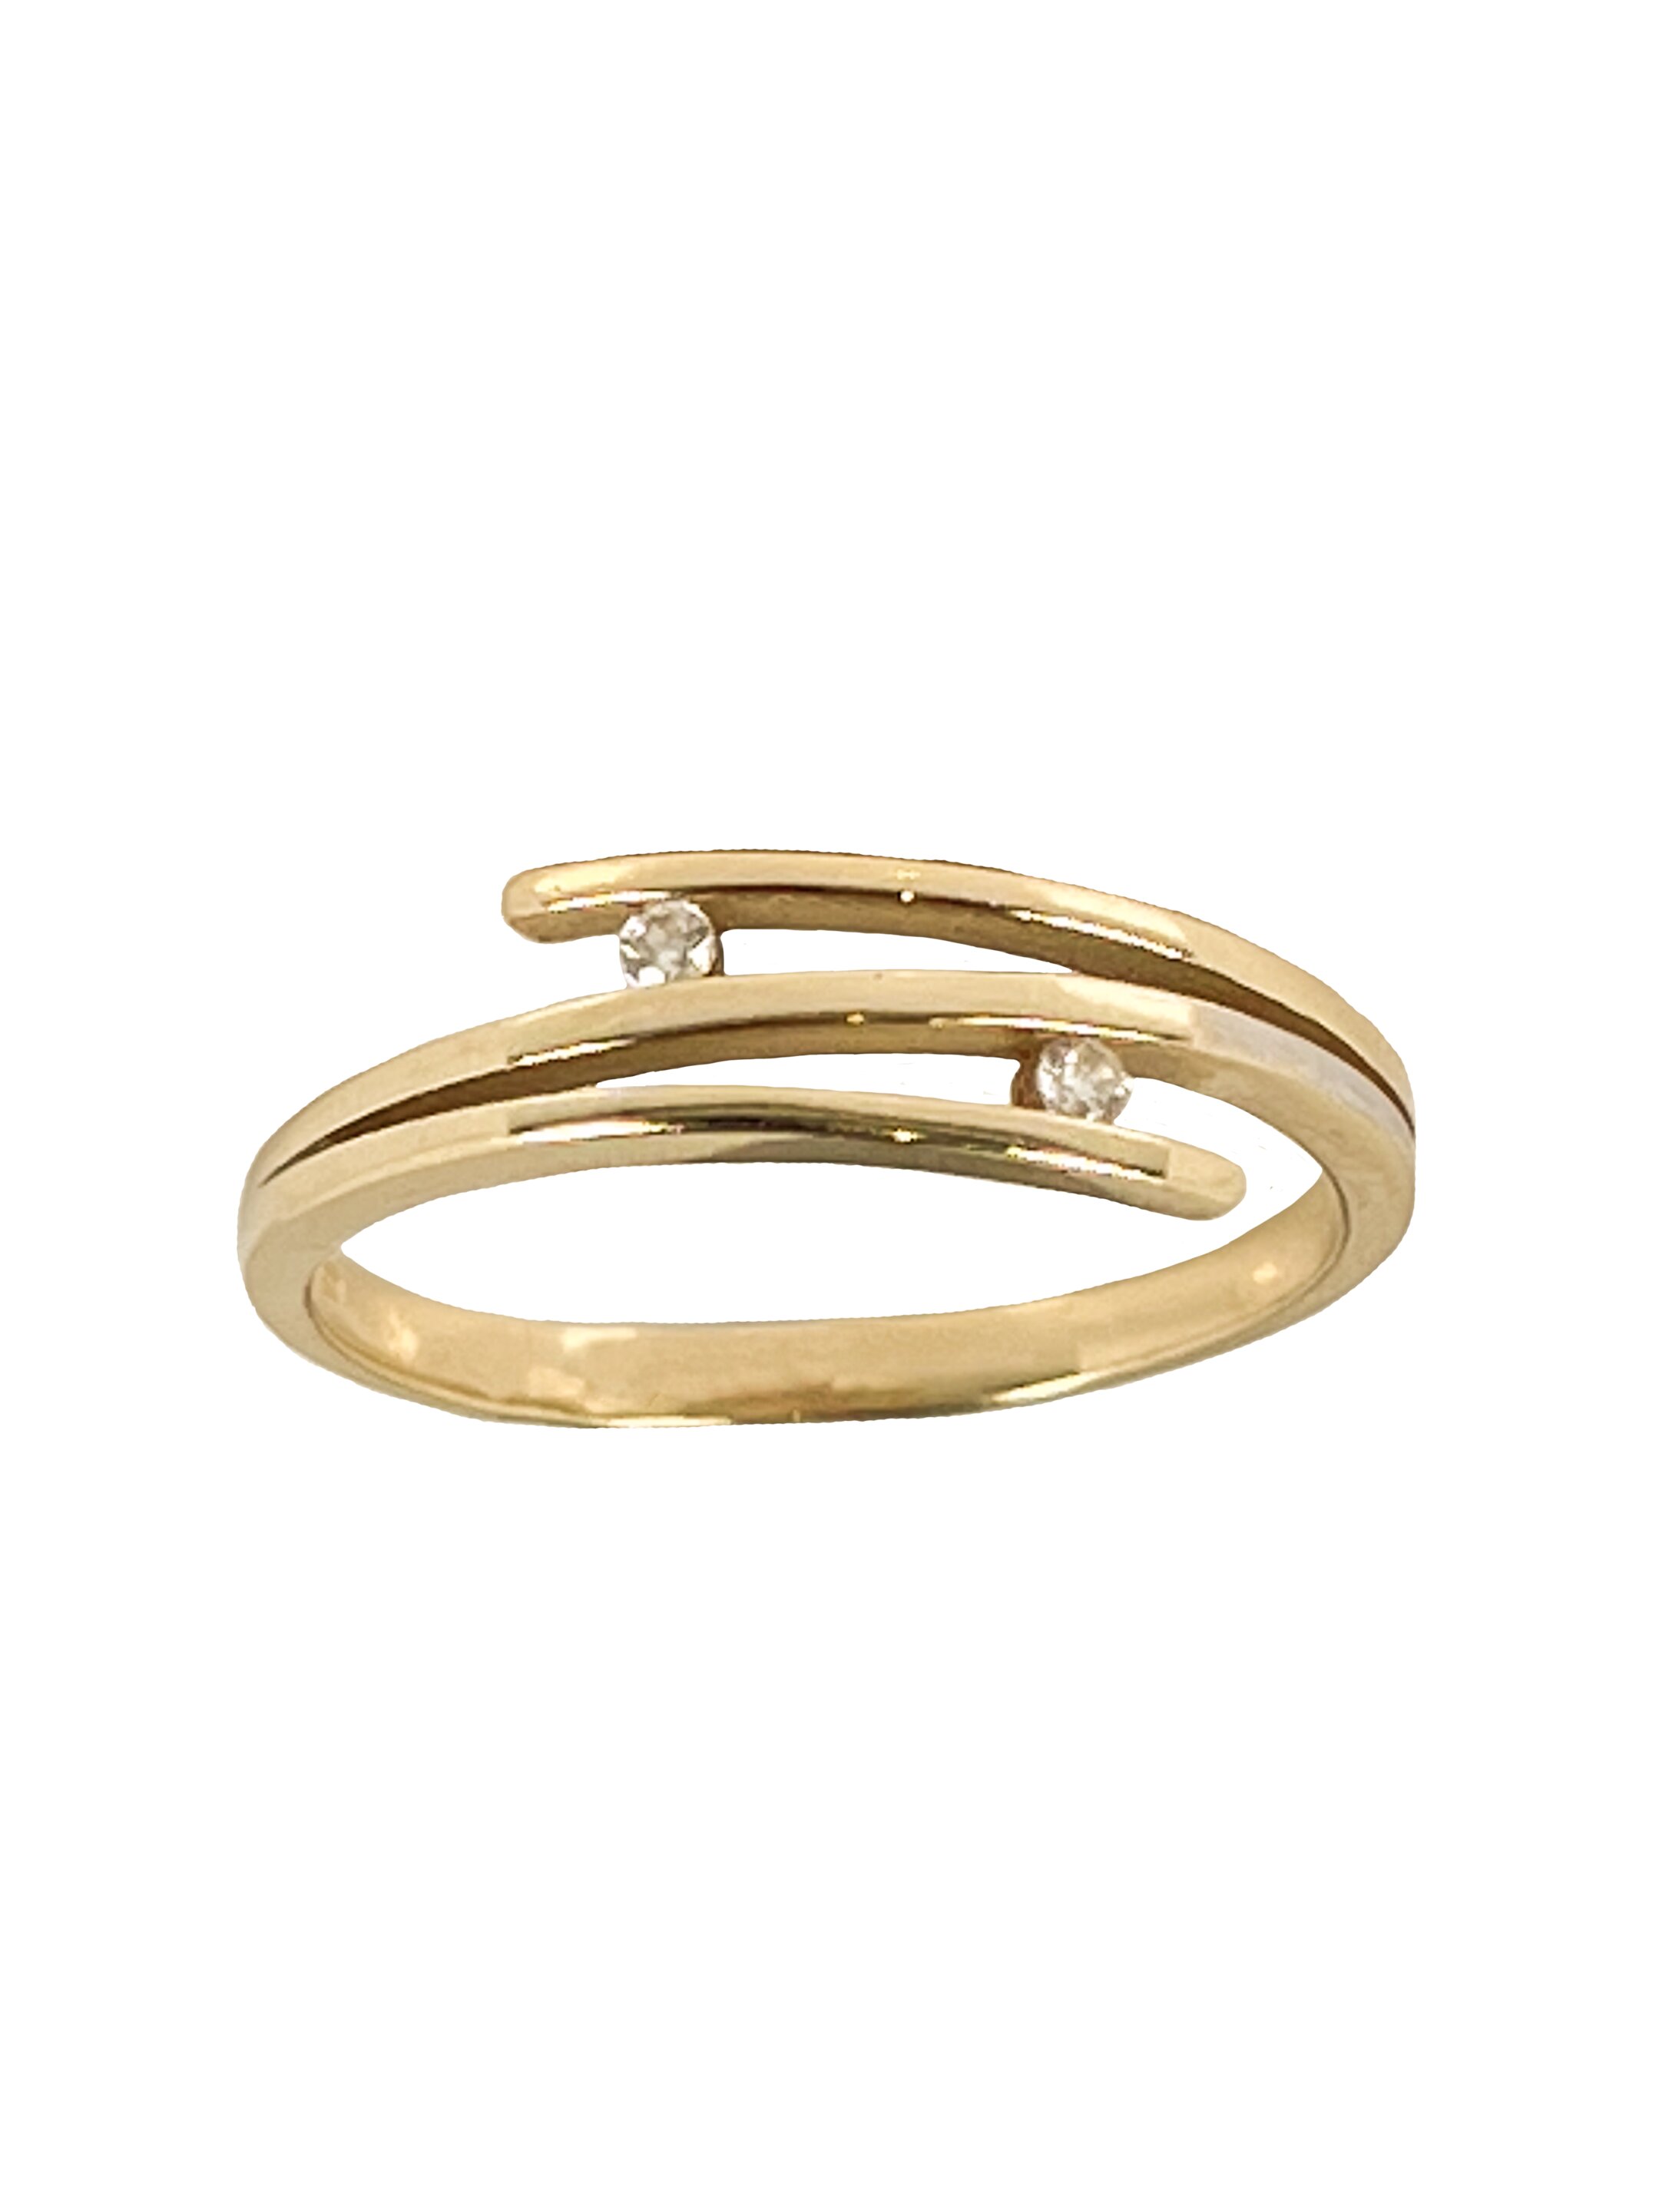 Δαχτυλίδι από κίτρινο χρυσό με δύο ζιργκόν